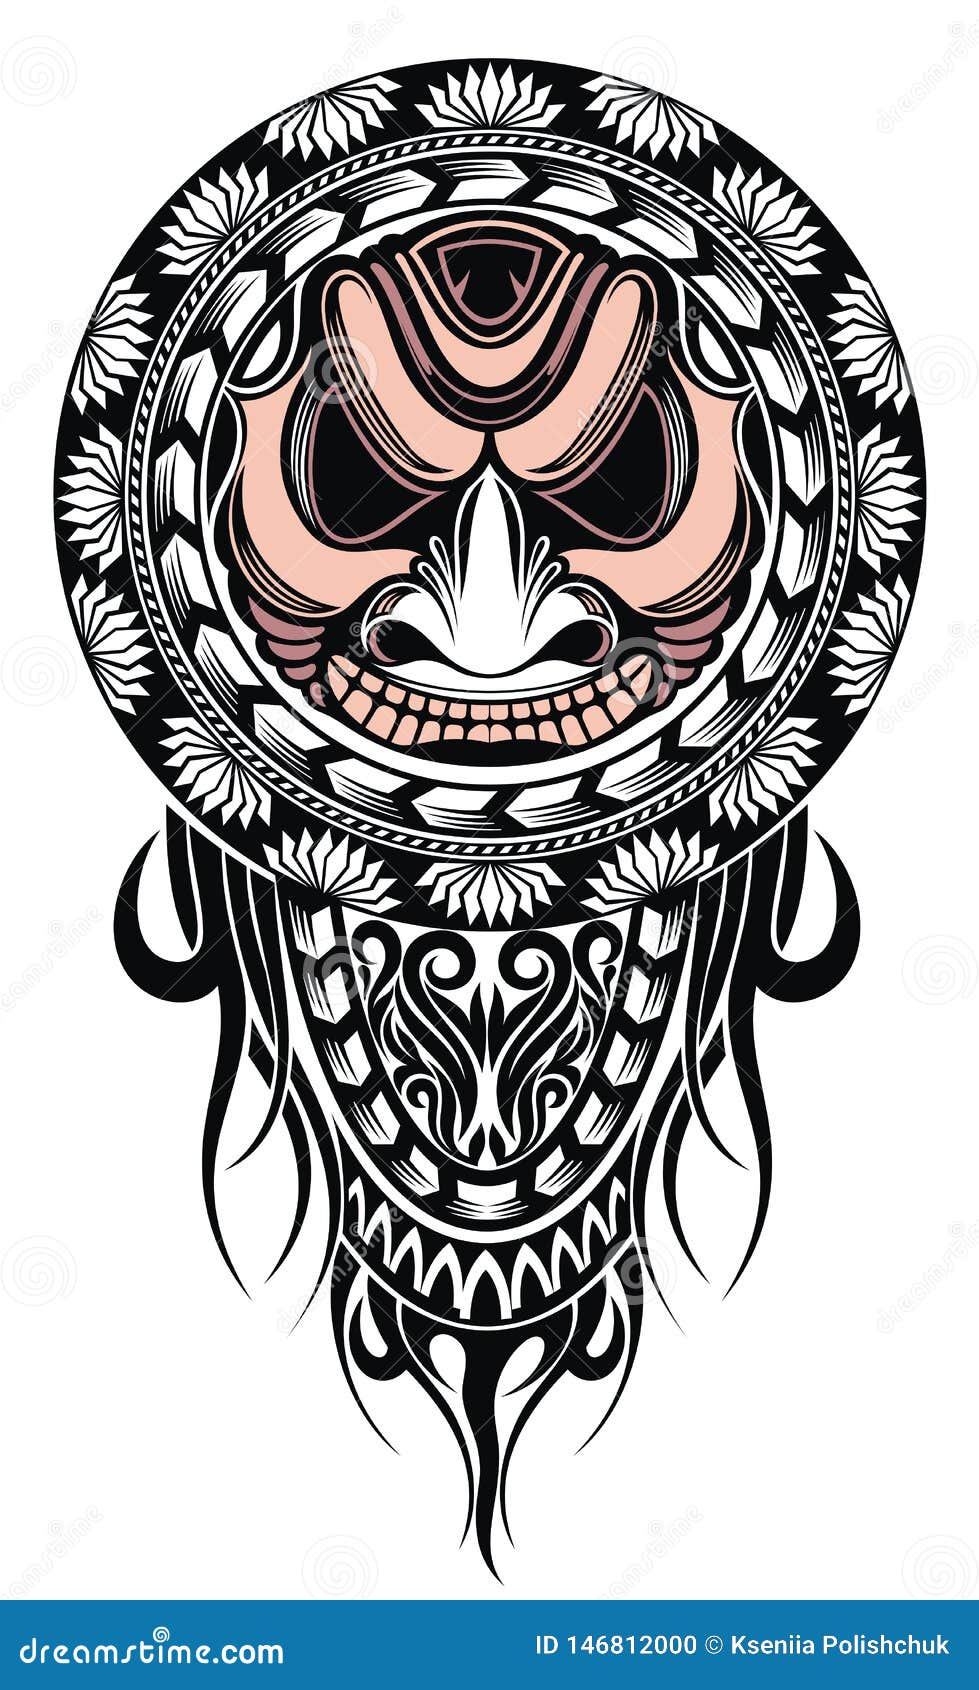 Mặt nạ hình xăm Polynesian đẹp mắt mang đầy đủ tính nghệ thuật sẽ khiến bạn yêu thích ngay từ cái nhìn đầu tiên. Cùng thưởng thức những thiết kế mới nhất với những chi tiết tinh tế đậm chất bản sắc địa phương. Bạn sẽ bị cuốn hút và đắm chìm trong thế giới của nghệ thuật Polynesian.